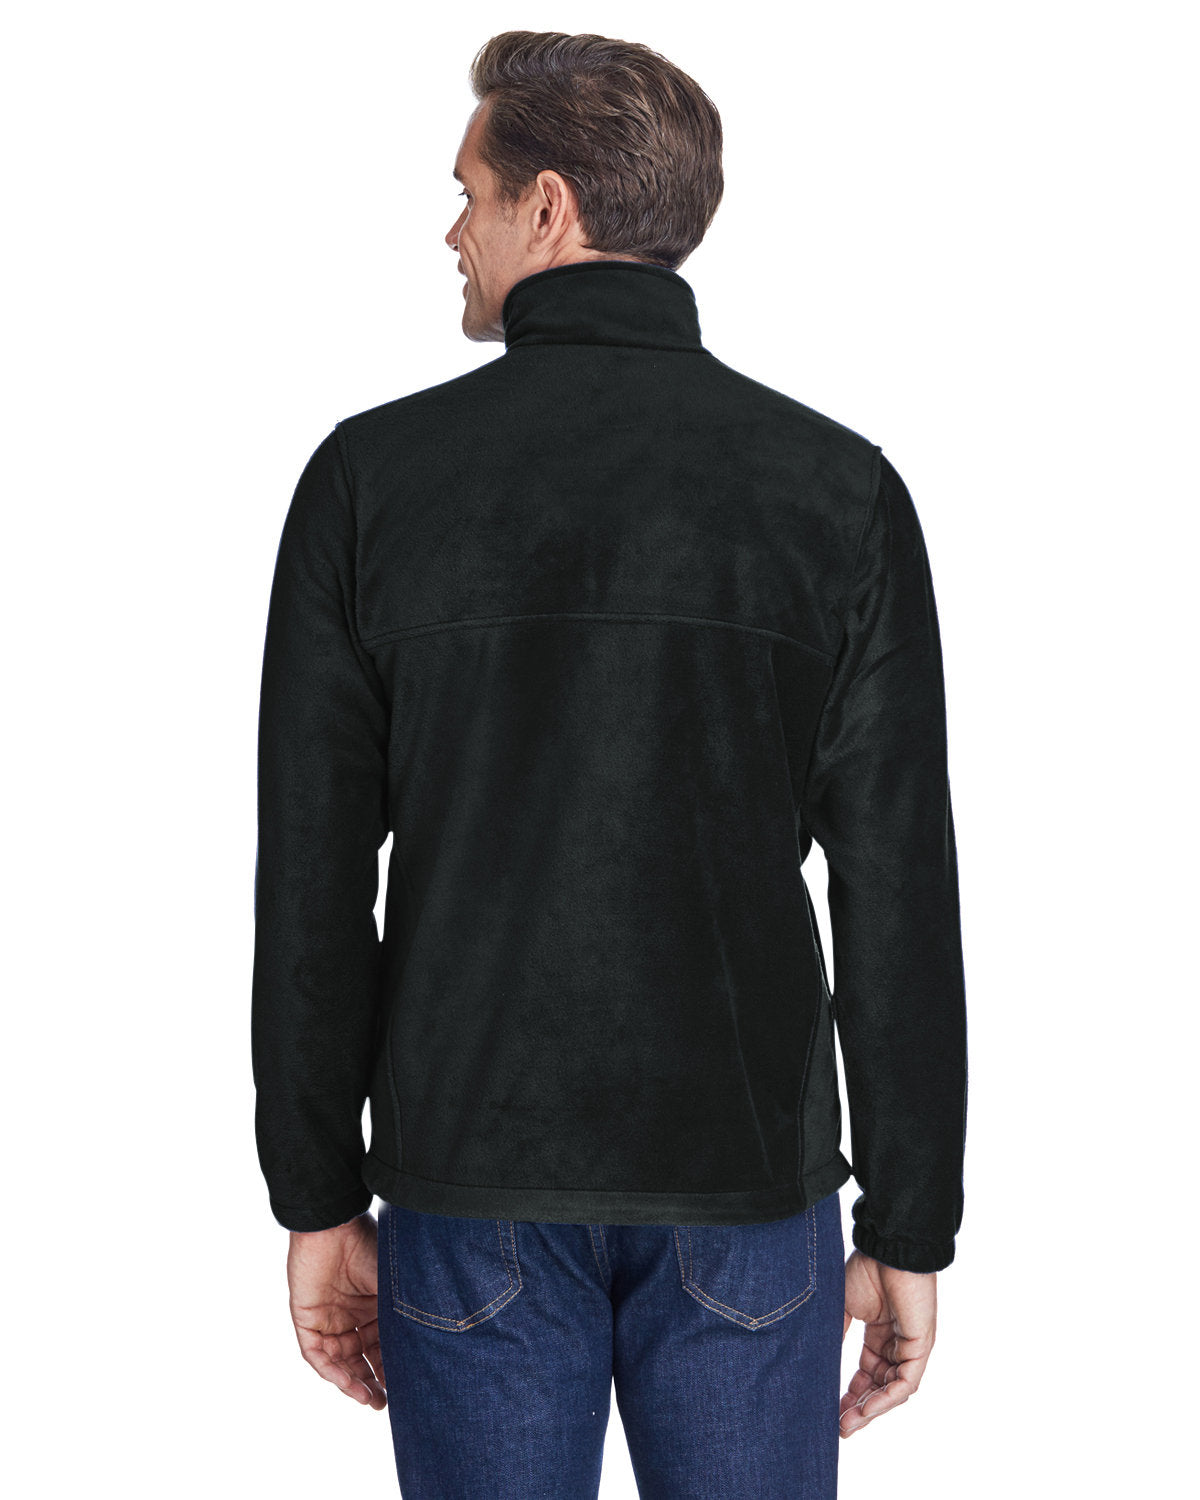 columbia_3220_black_company_logo_jackets